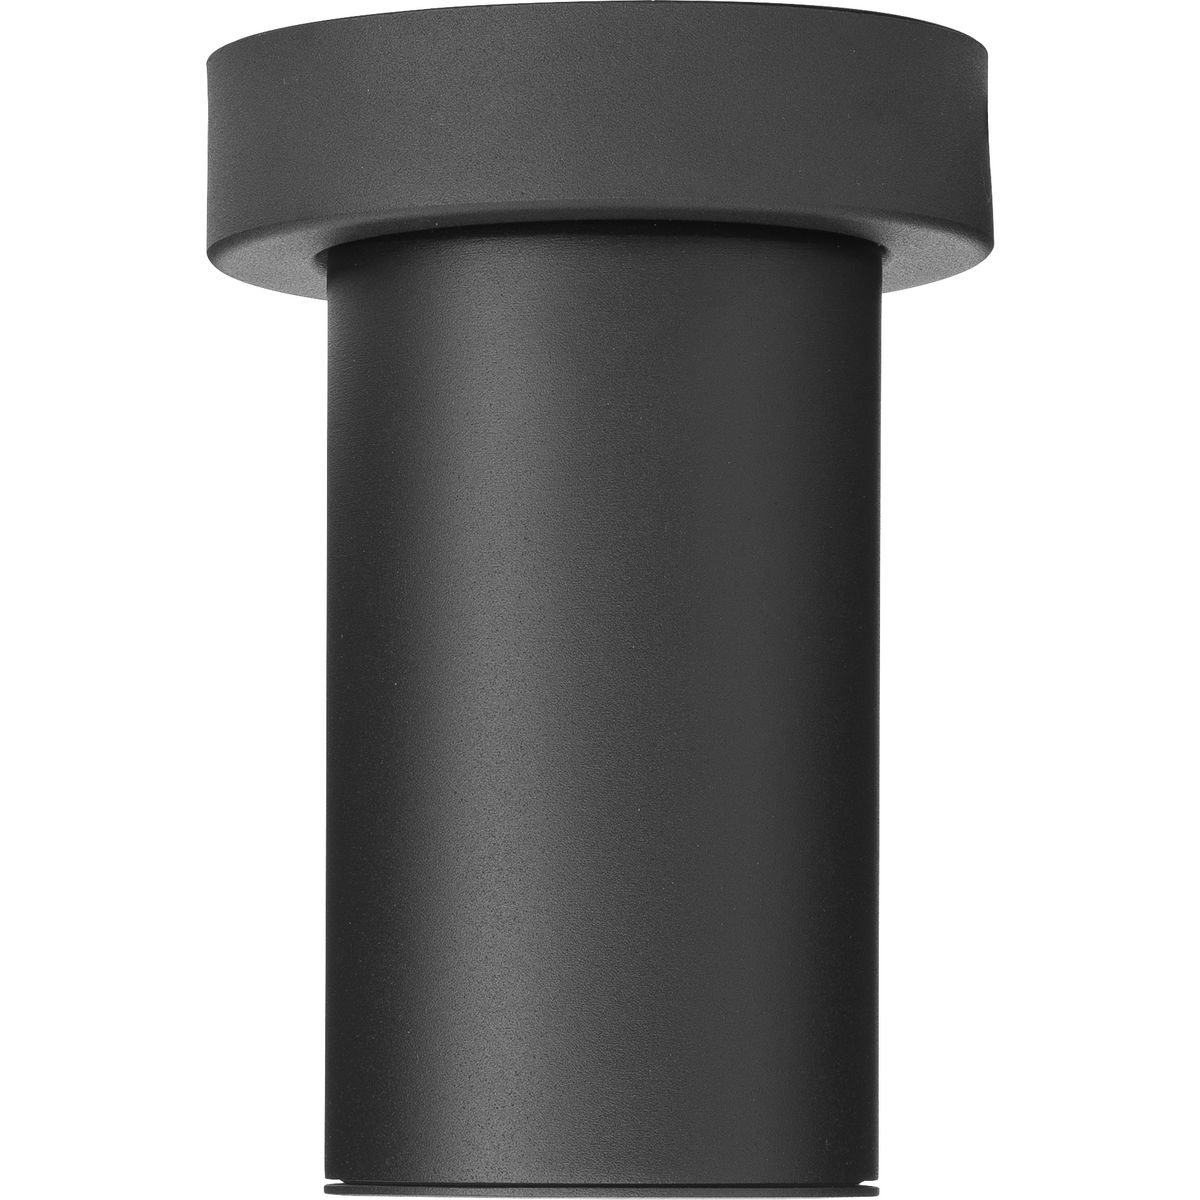 3" Black Surface Mount Modern Adjustable LED Cylinder - Damp Location Listed